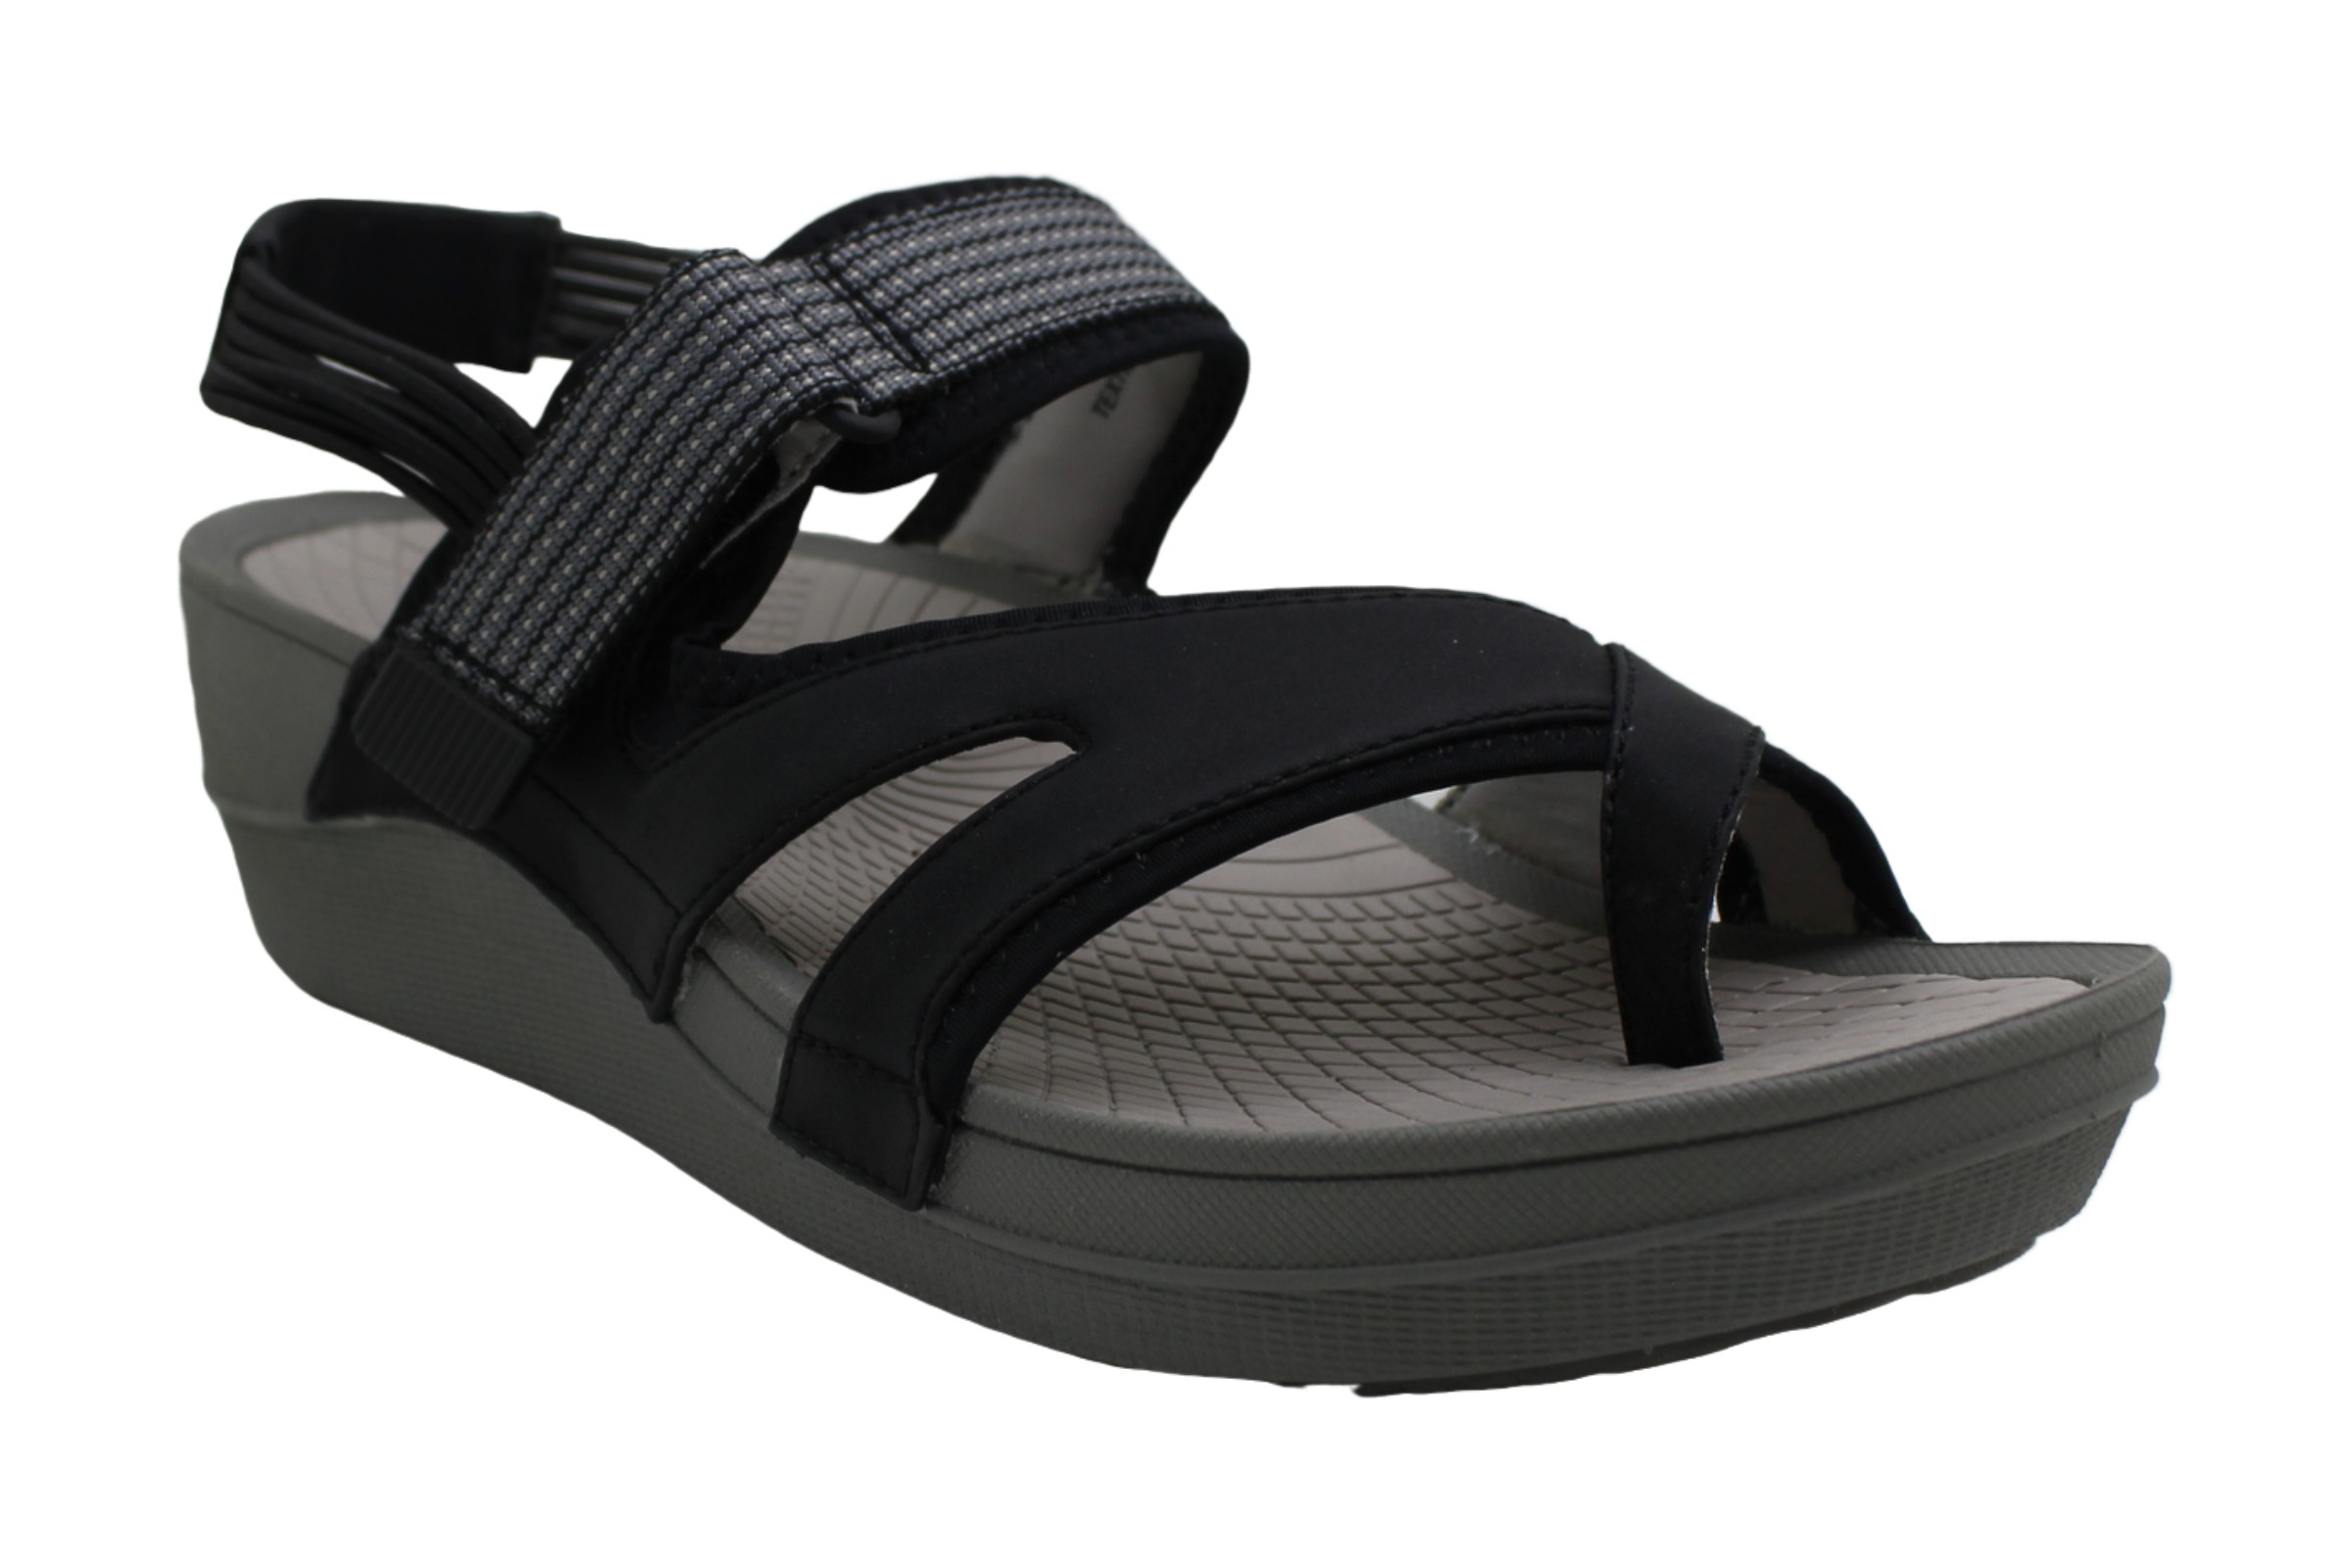 Bare Traps Womens Brinley Open Toe Casual Strappy Sandals Black Multi Size 85 Ebay